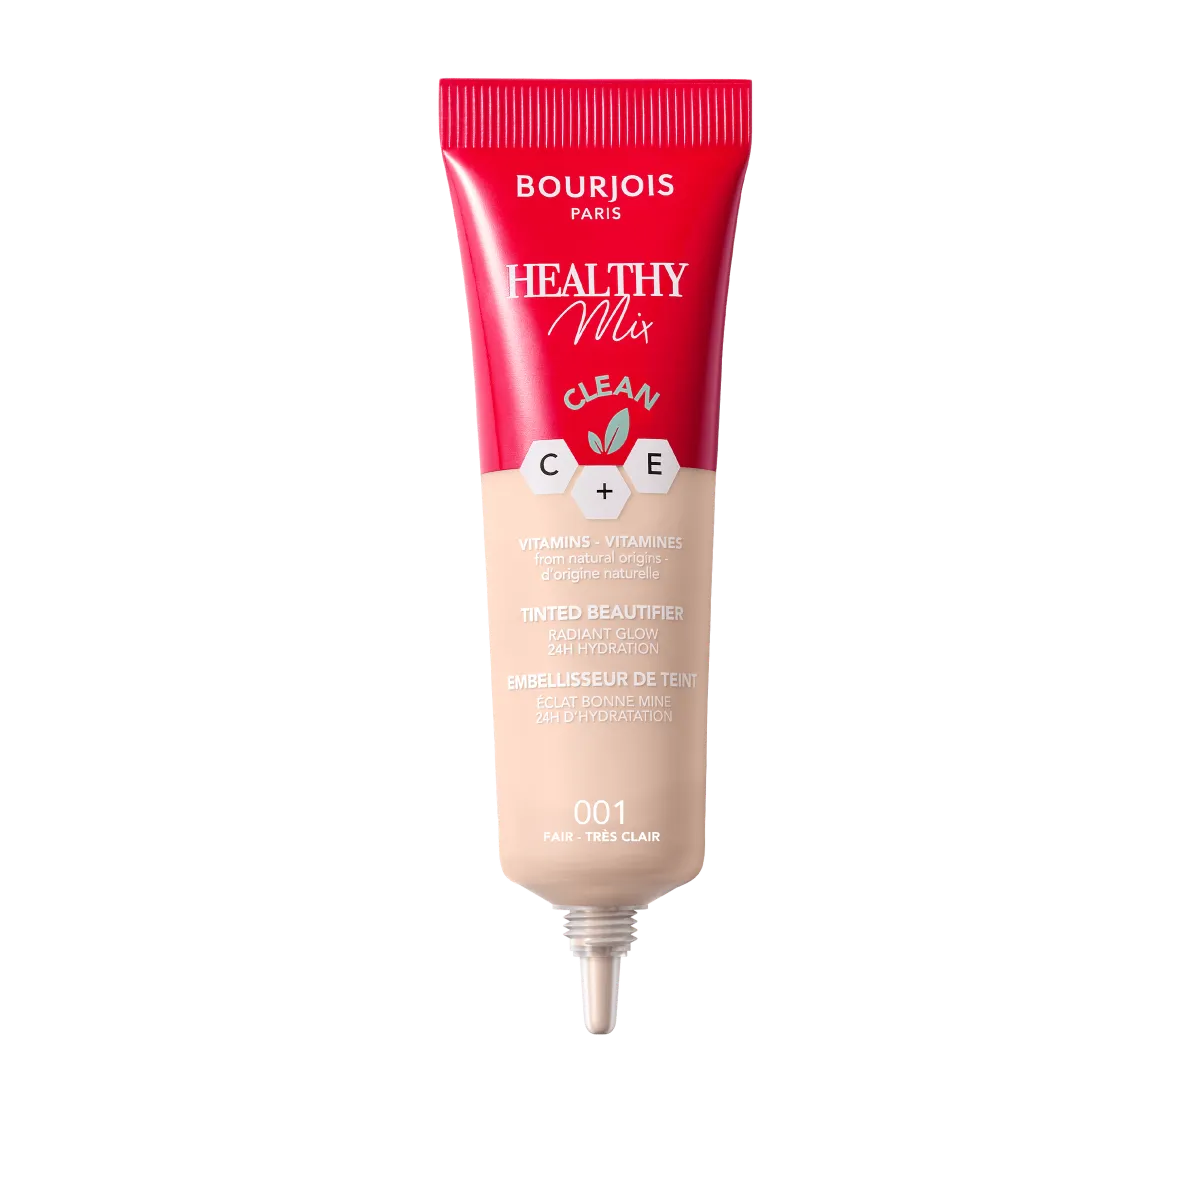 Bourjois Healthy Mix podkład witaminowy do twarzy krem tonujący o naturalnym wykończeniu, 001 fair, 30 ml 